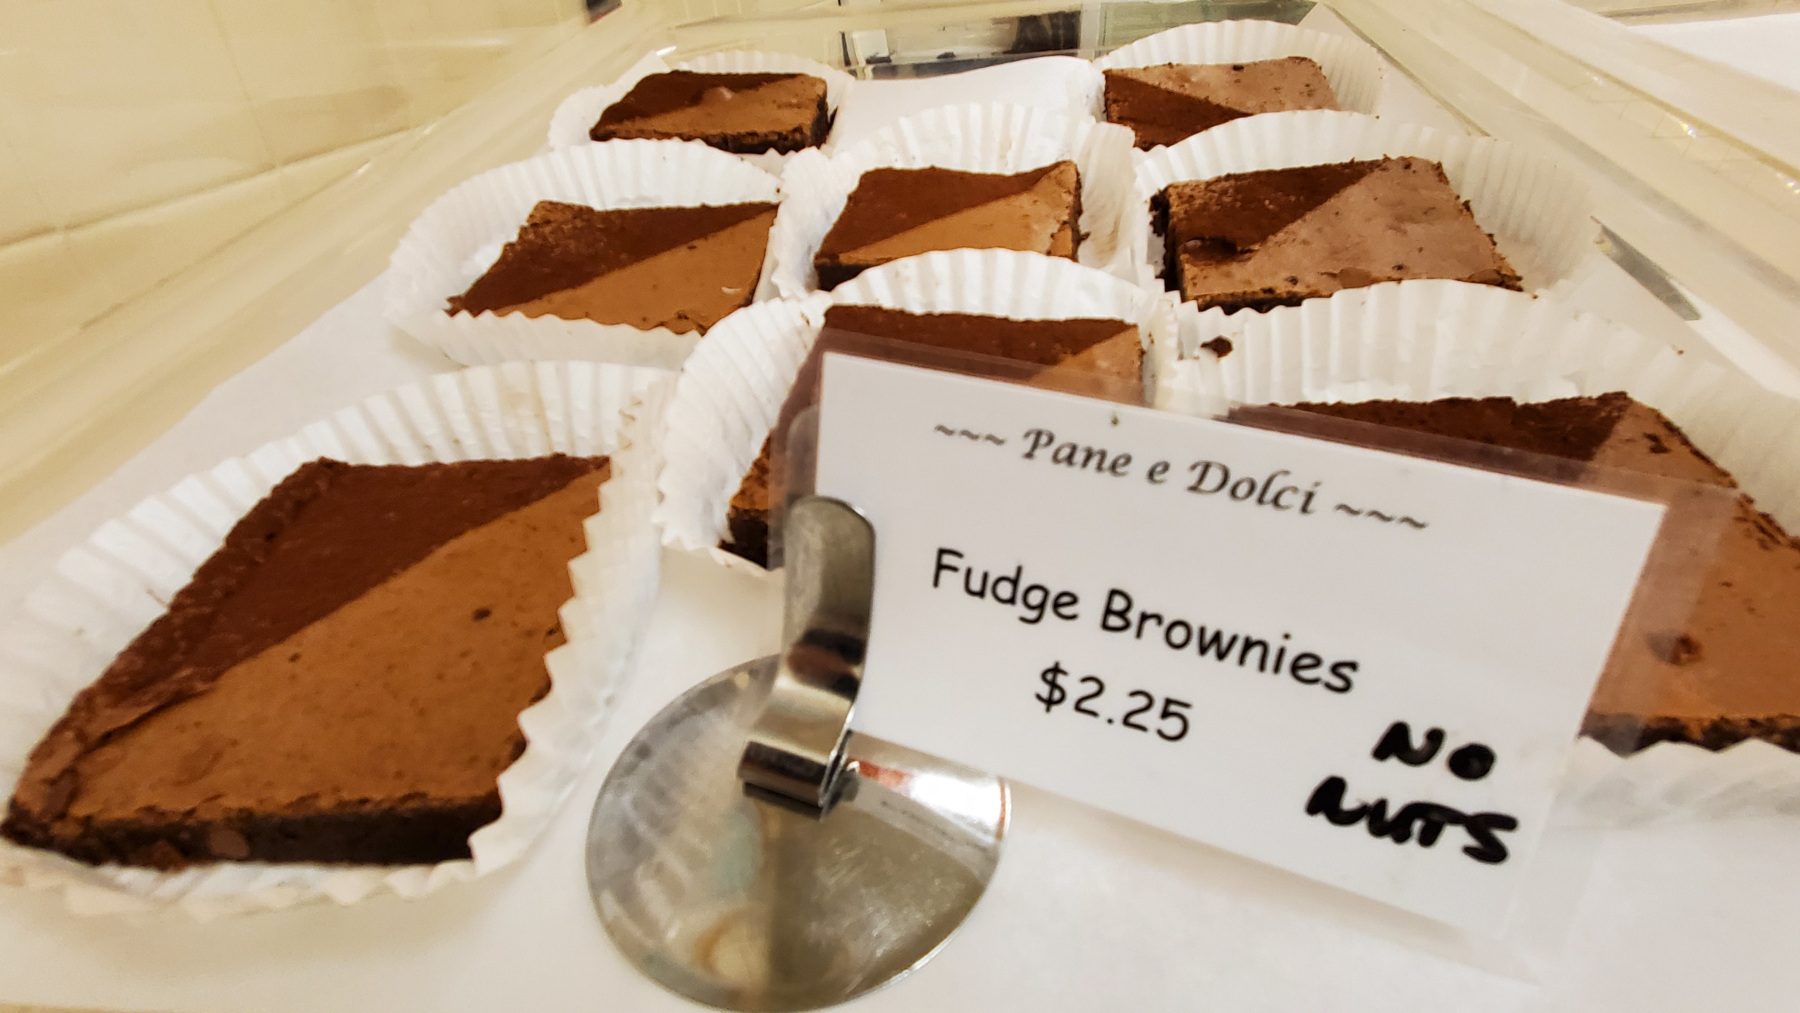 Brownies in bakery case